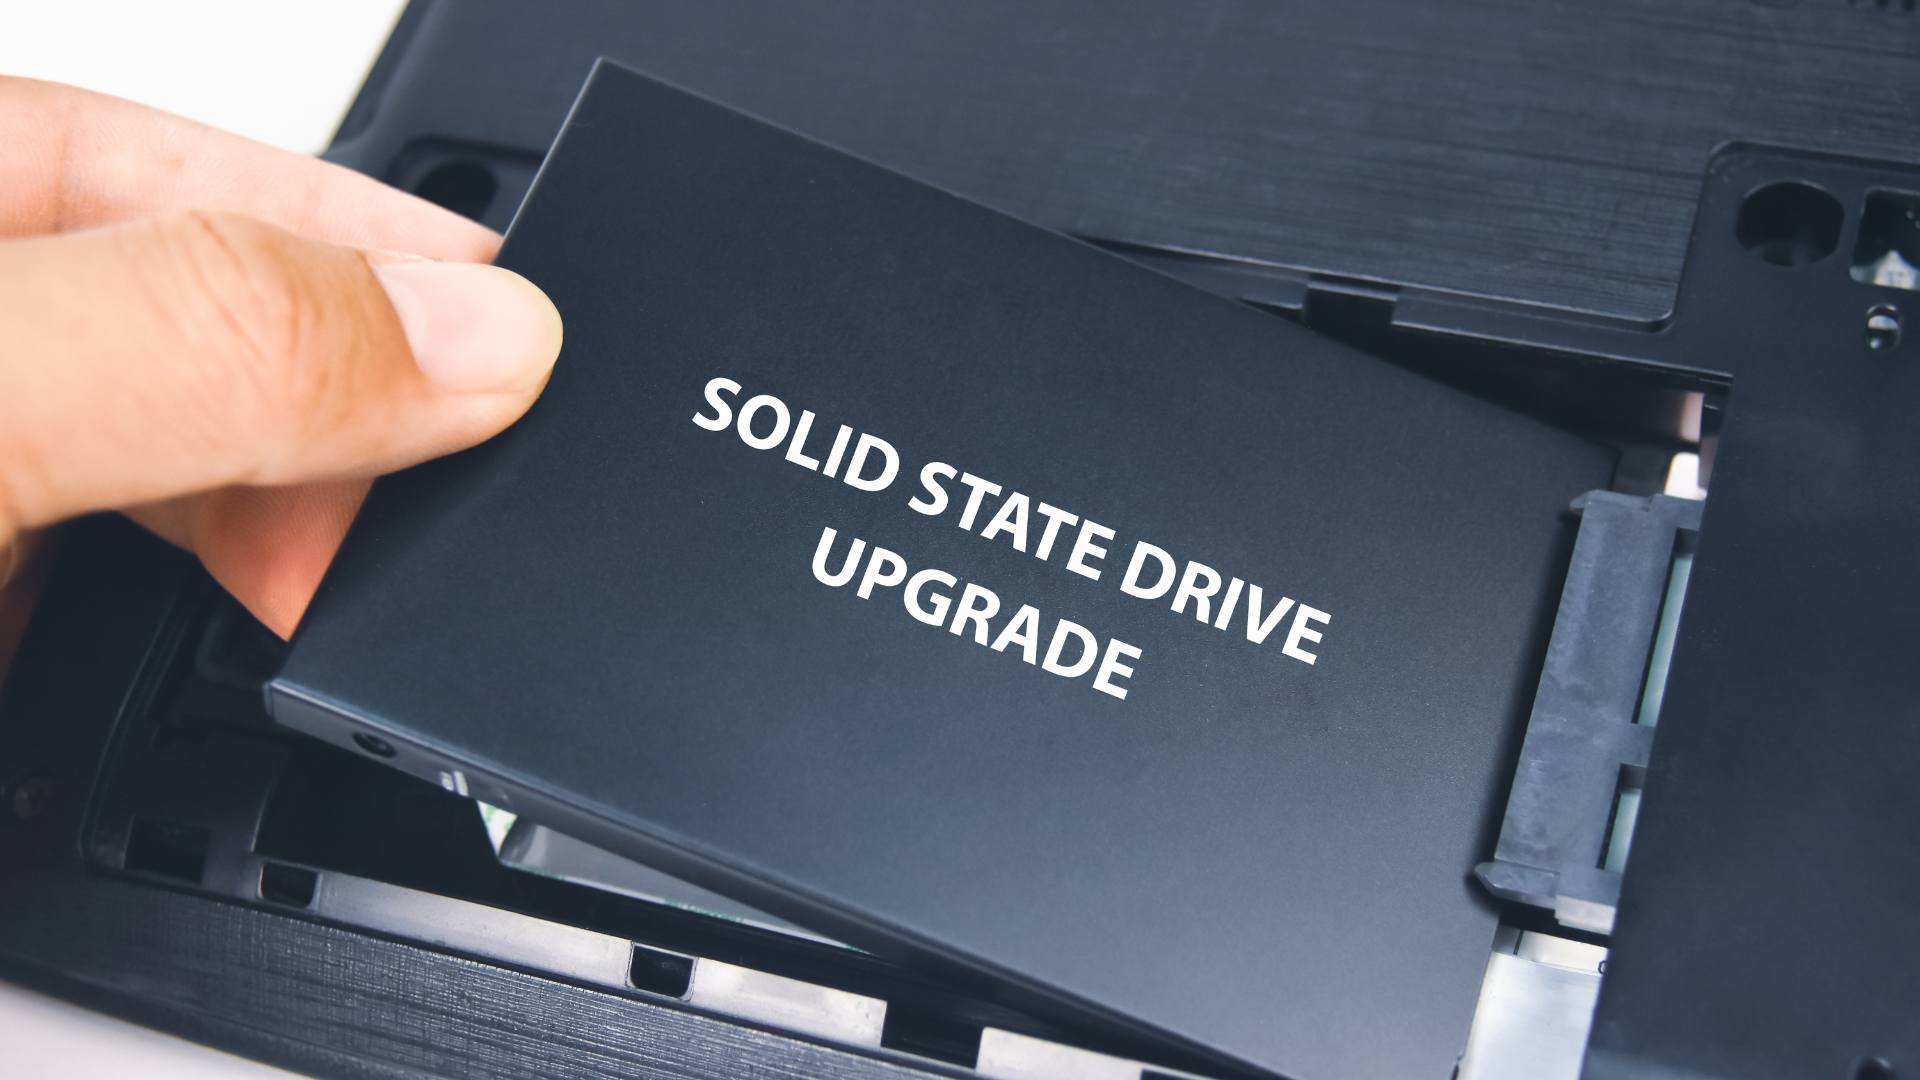 Sử dụng ổ cứng SSD cũng là cách làm máy tính laptop chạy nhanh hơn